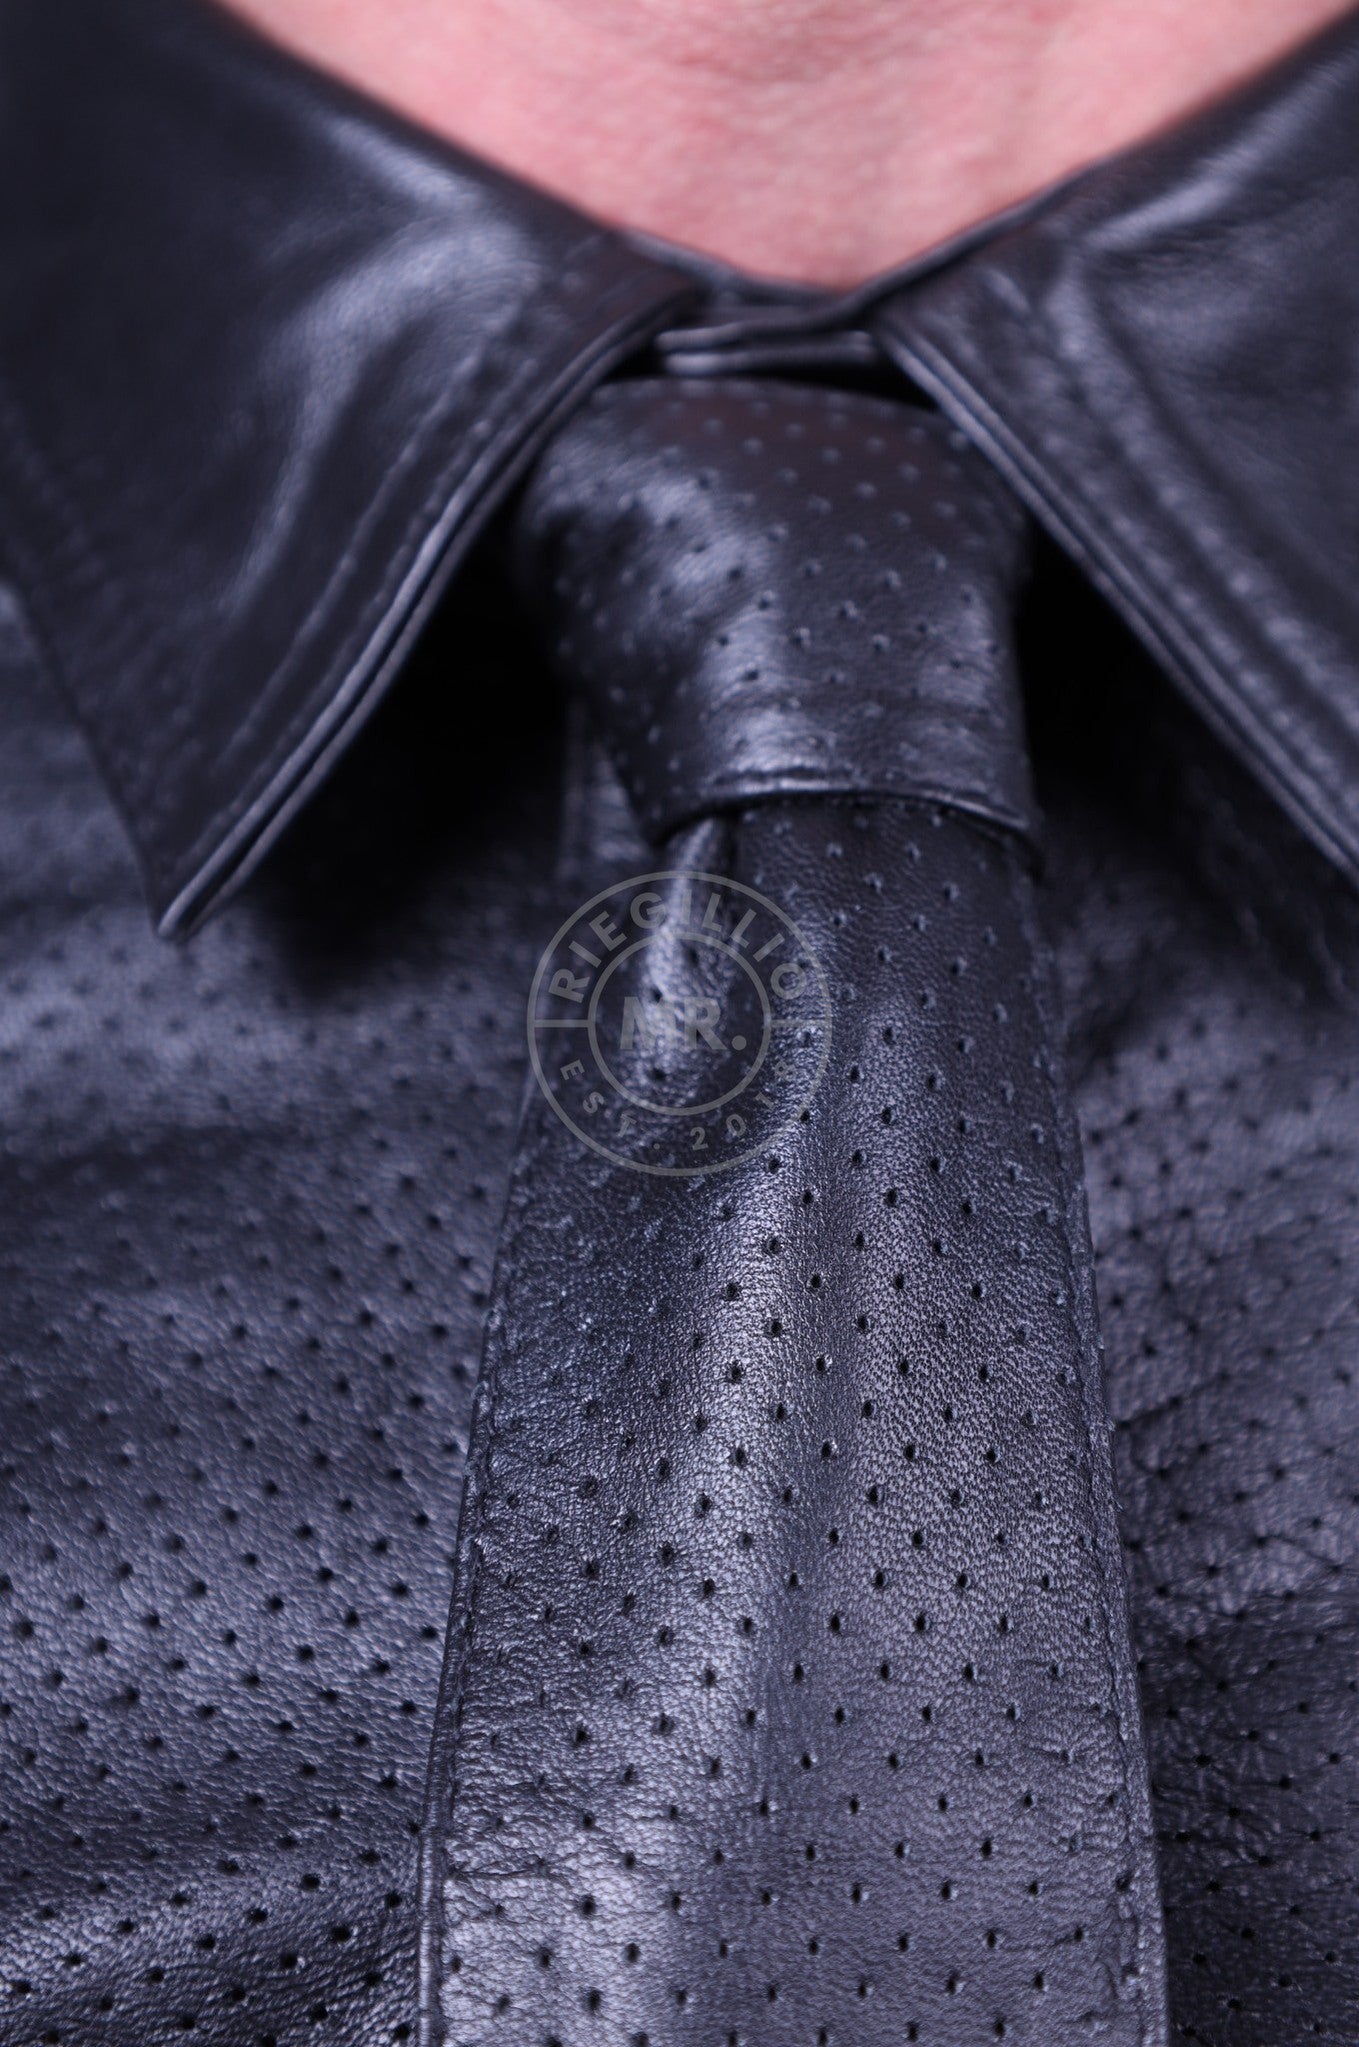 Black Leather Perforated Tie-at MR. Riegillio